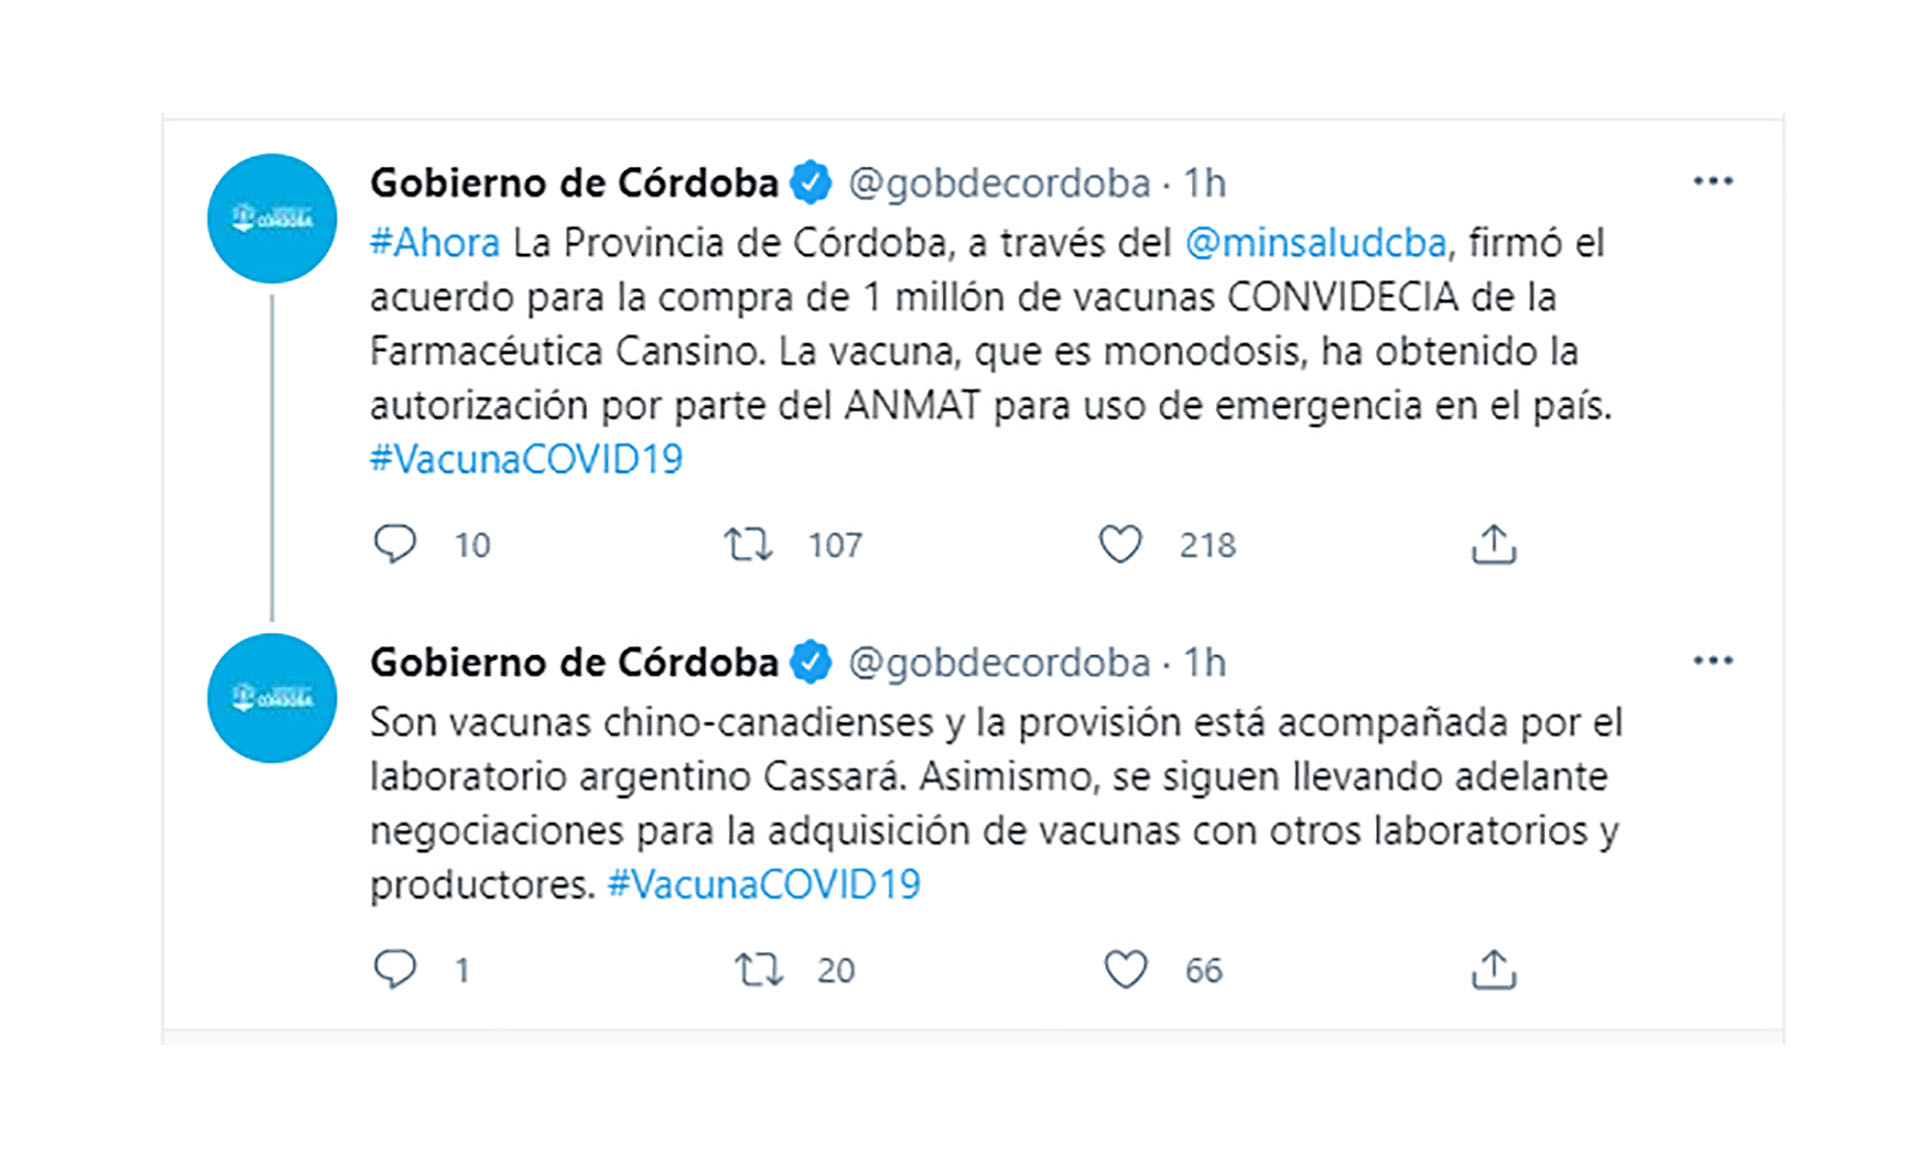 Los mensajes del gobierno de Córdoba (Twitter)